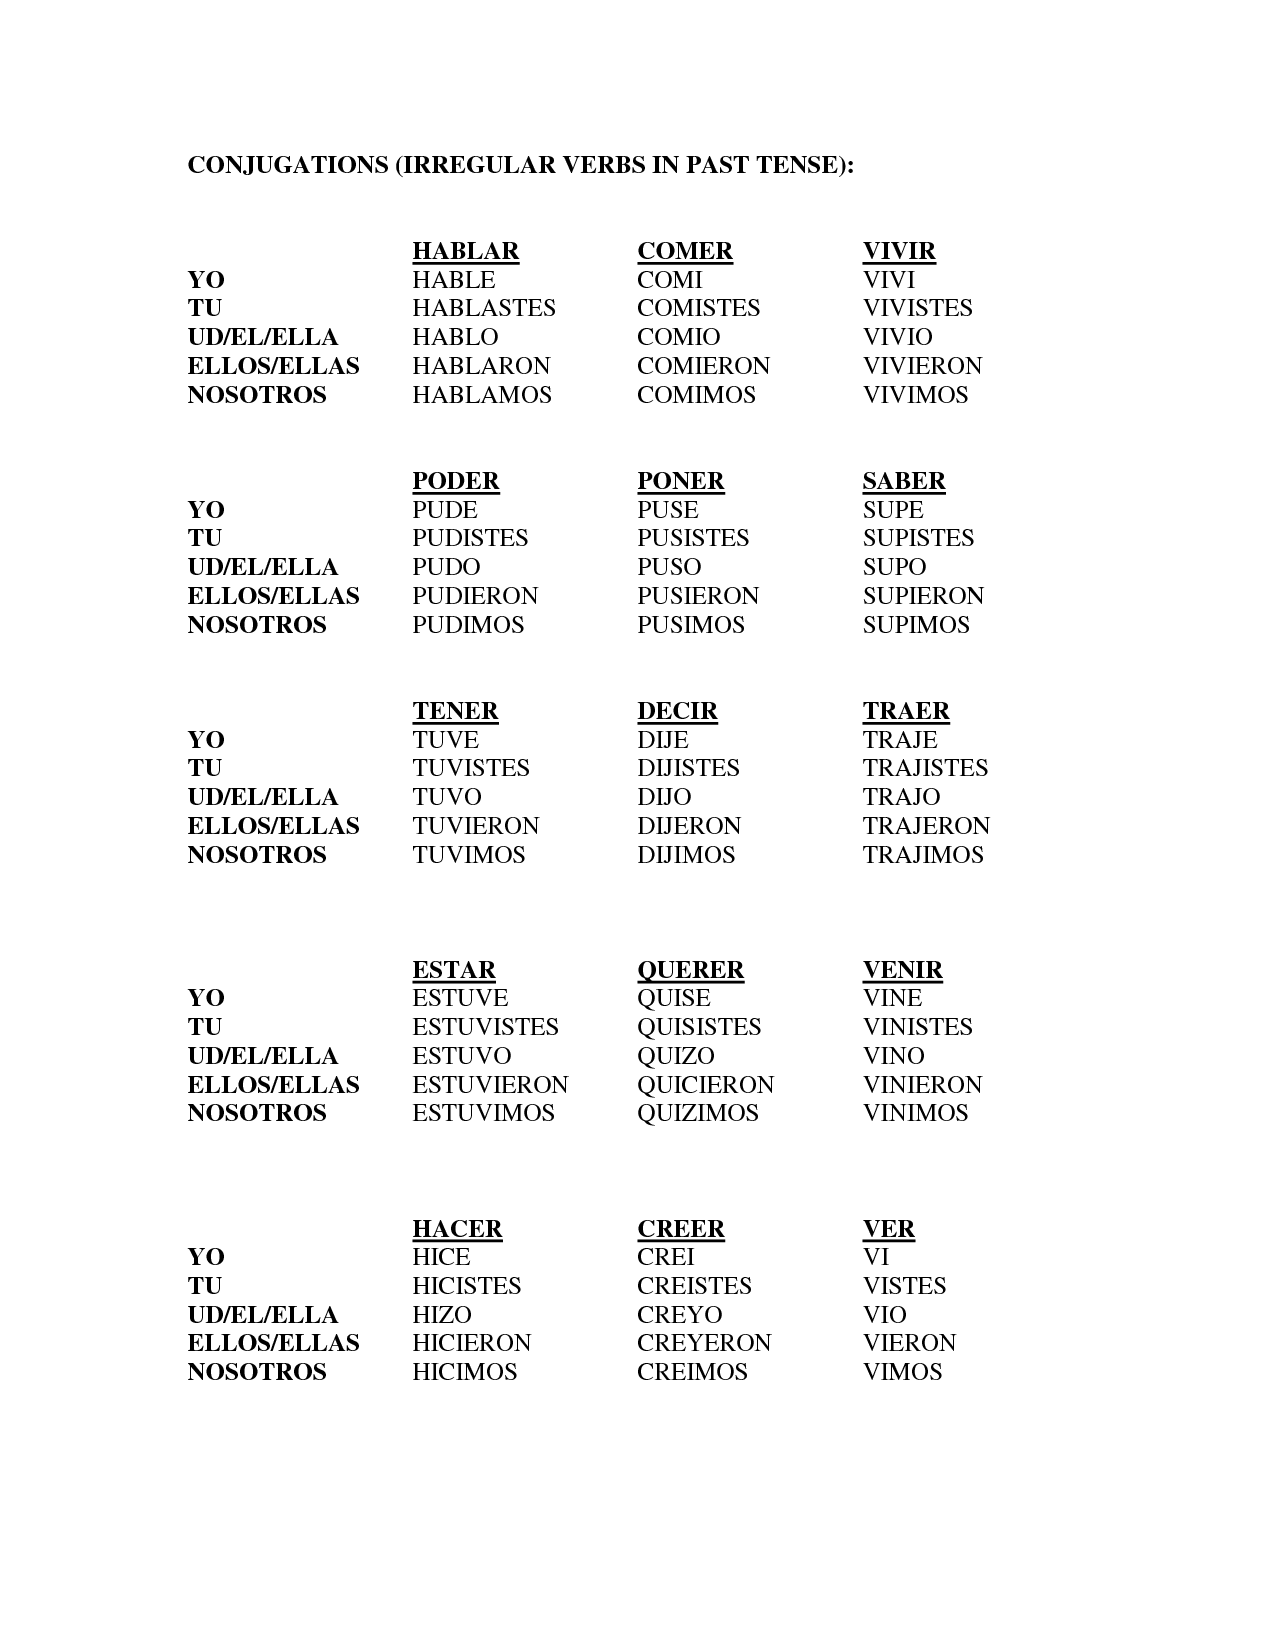 17-best-images-of-spanish-conjugation-worksheets-printable-spanish-verb-conjugation-worksheets